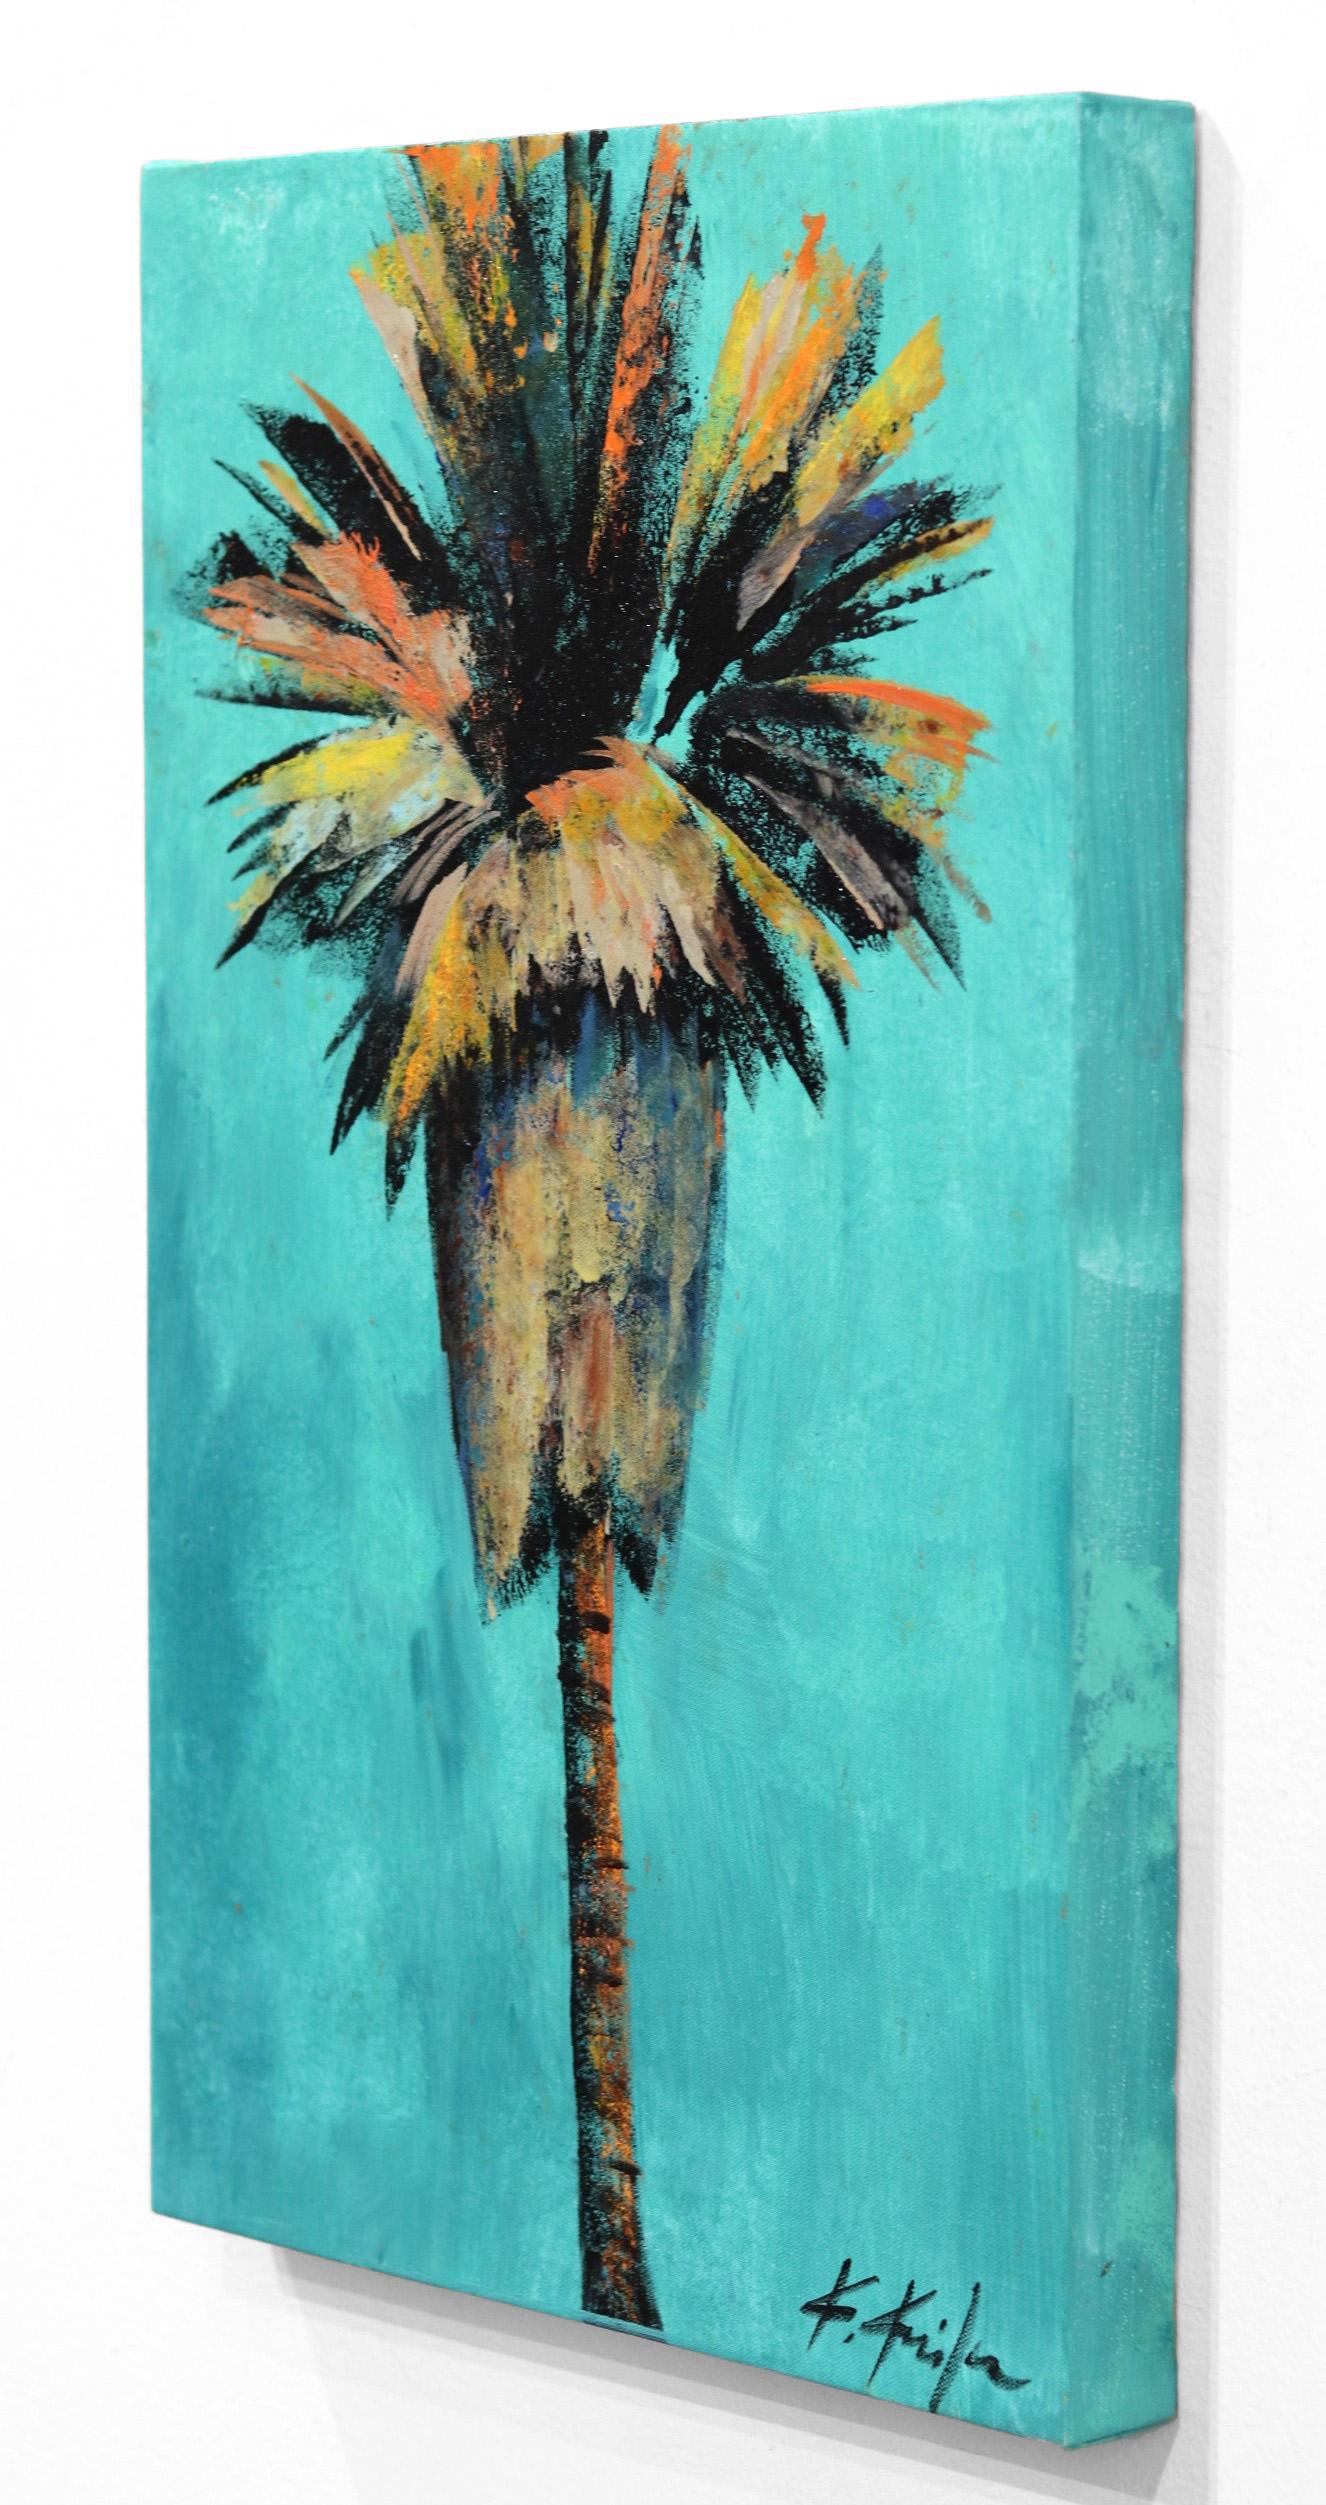 Kathleen Keifers Originalkunstwerke sind eine der bedeutendsten Ausdrucksformen des New California Realism. Keifer bringt eine neue Perspektive in ihre farbenfrohen Szenen des täglichen Lebens in der Sonne entlang der Pazifikküste (und darüber